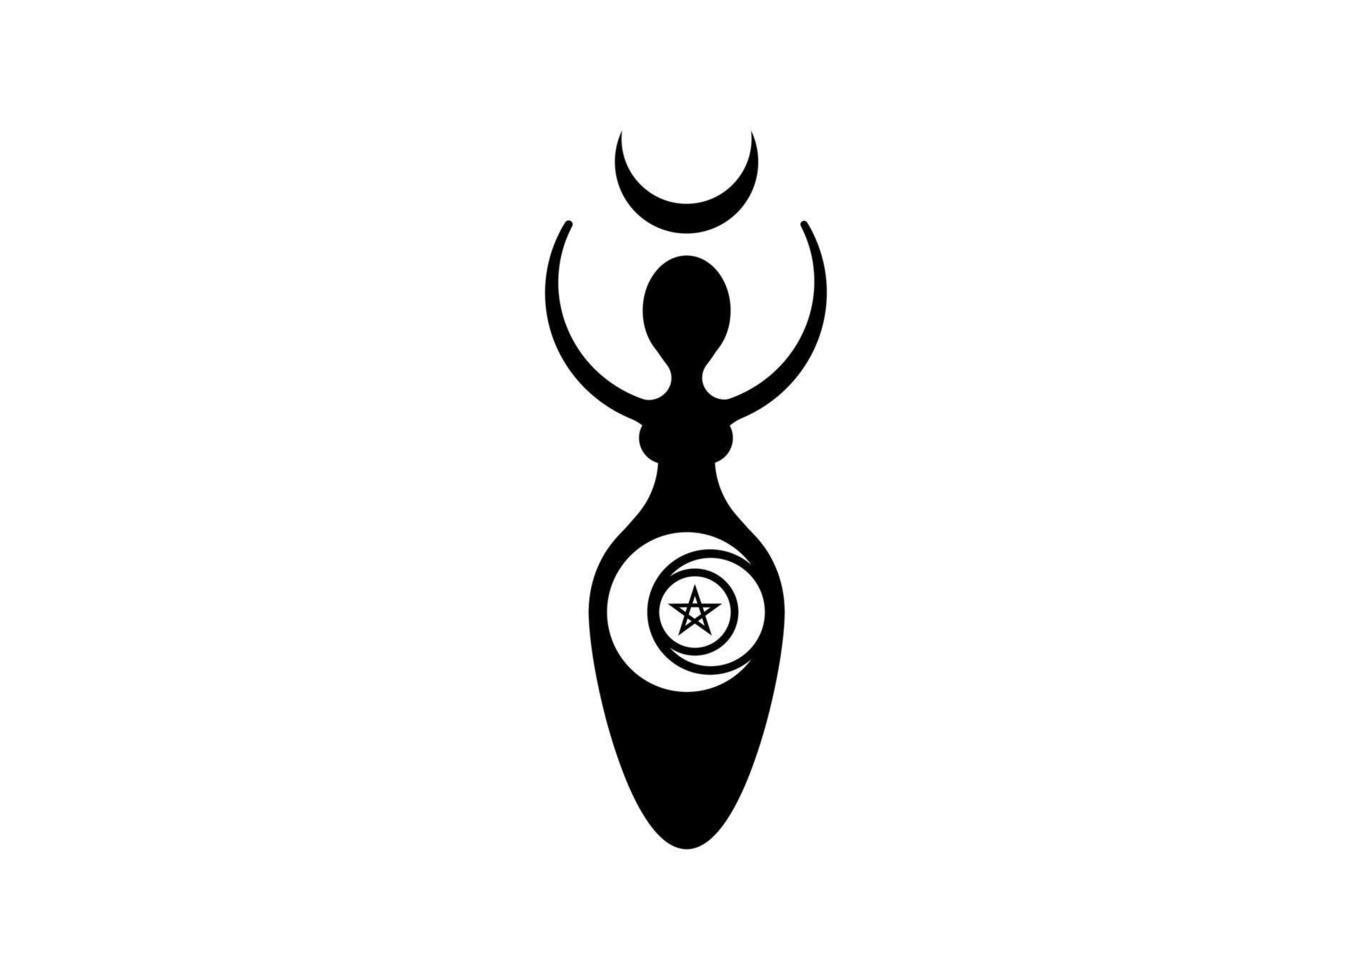 Wicca vrouw logo drievoudige maangodin, wassende maan, pentacle heidense symbolen, cyclus van leven, dood en wedergeboorte. Wicca moeder aarde symbool van seksuele voortplanting, vector tattoo pictogram geïsoleerd op wit